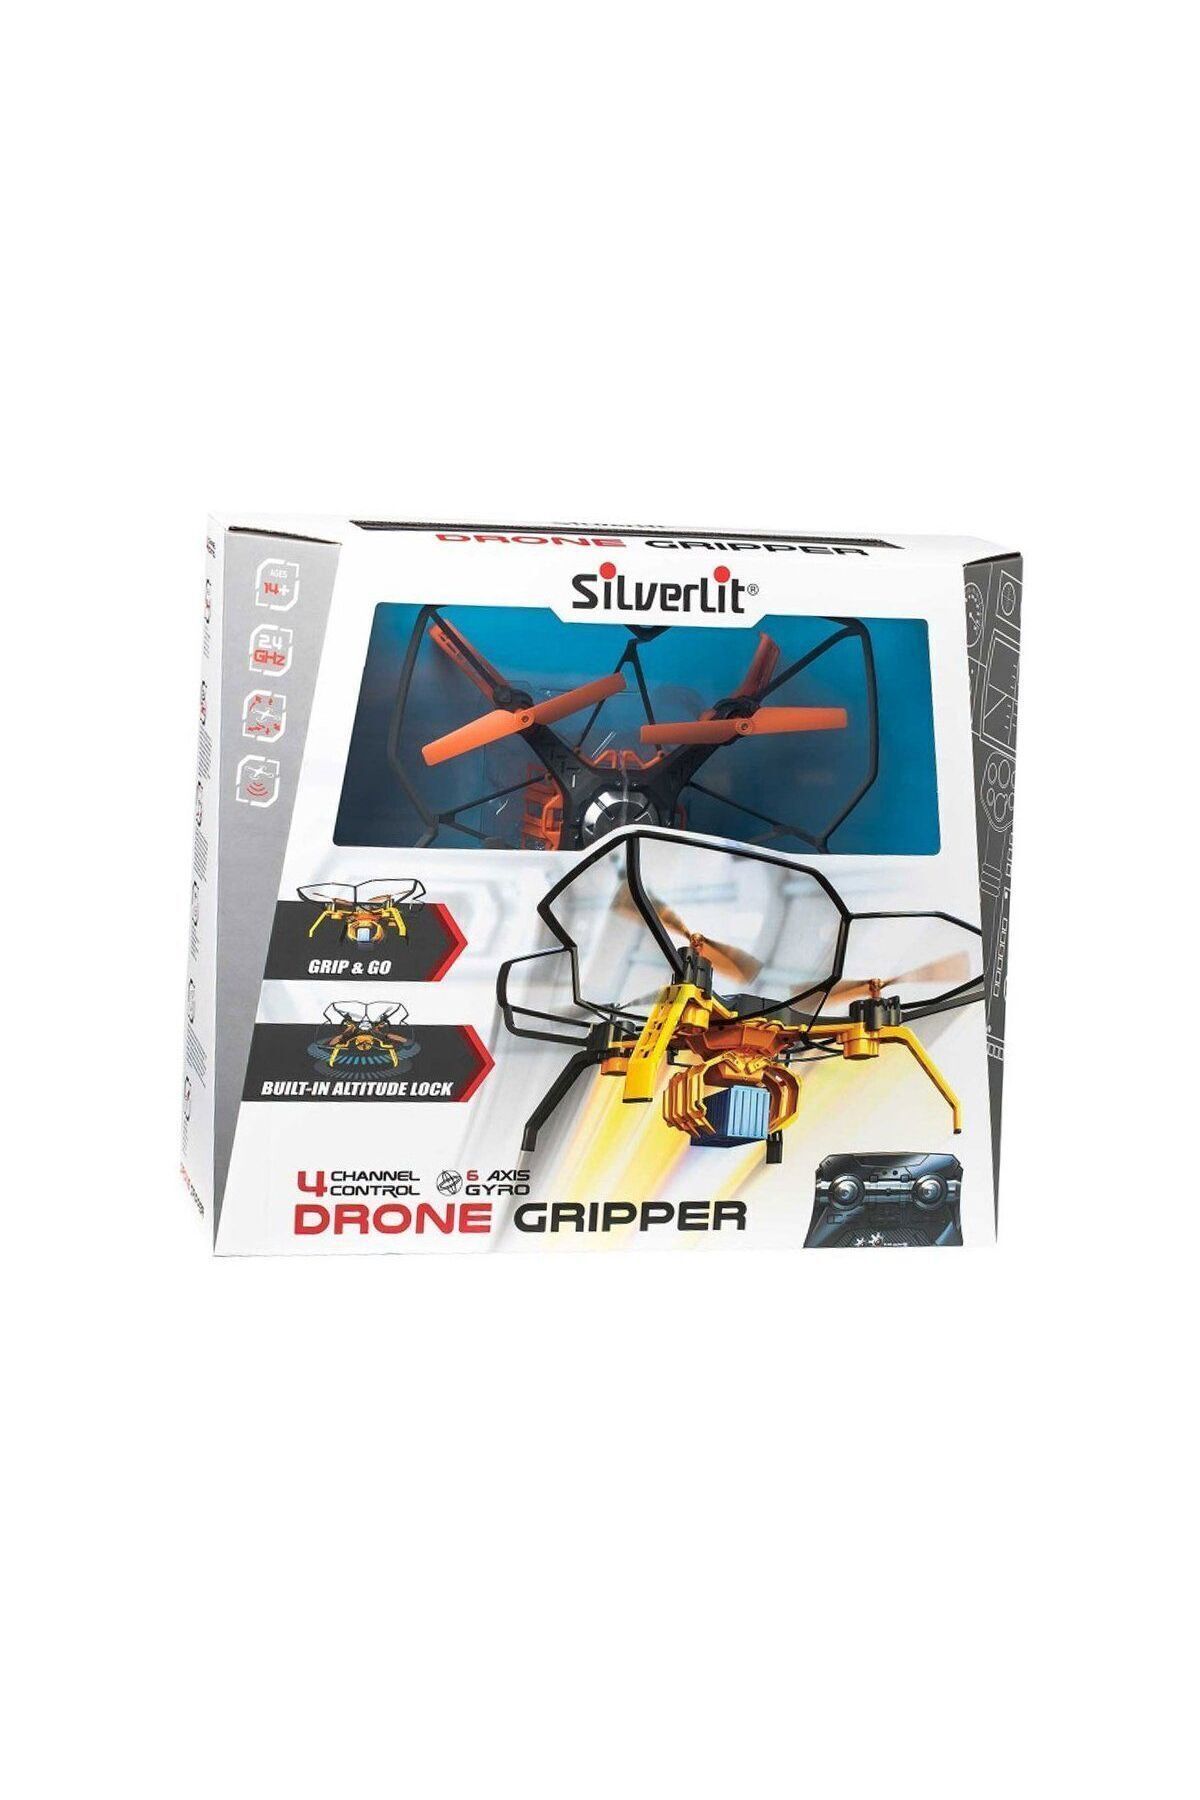 KdrElektronik Sıl/84785 Silverlit Drone Gripper 2.4g-4ch Gyro